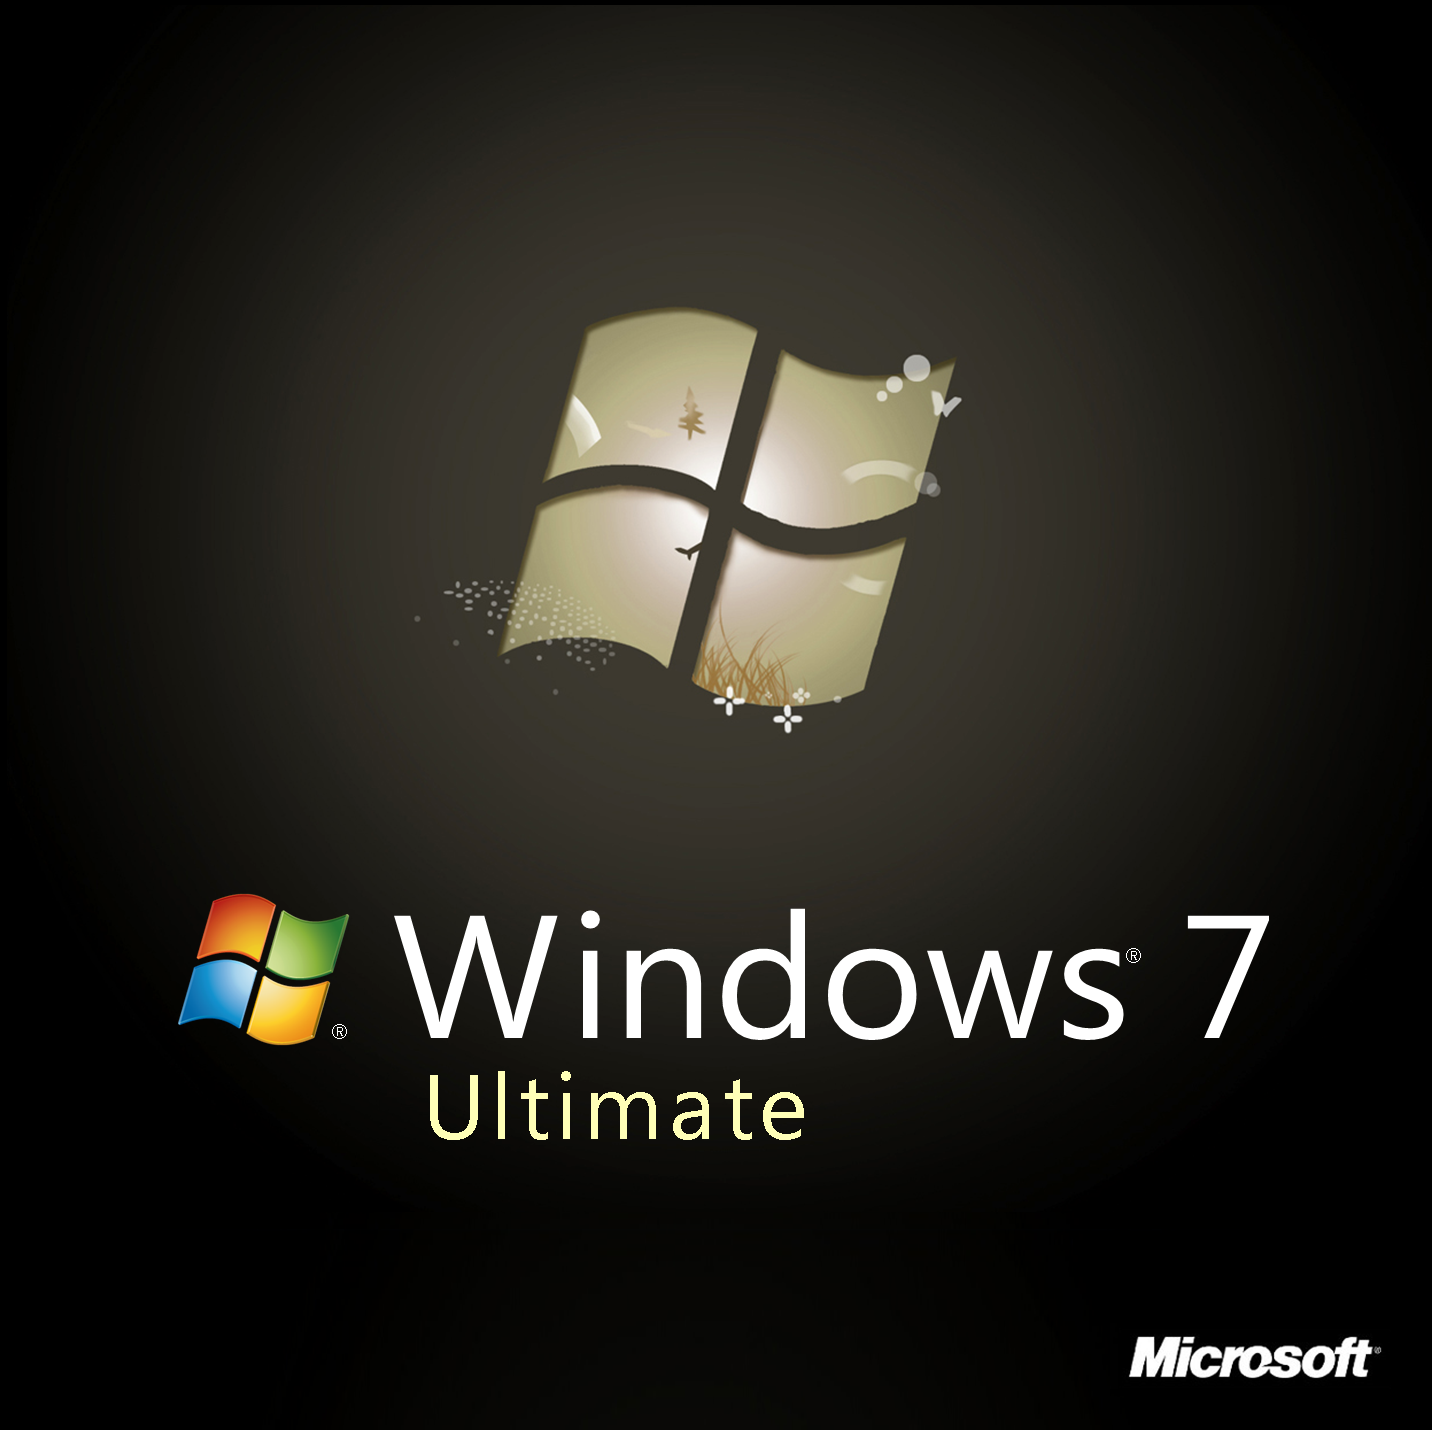 windows 7 ultimate keygen download crack